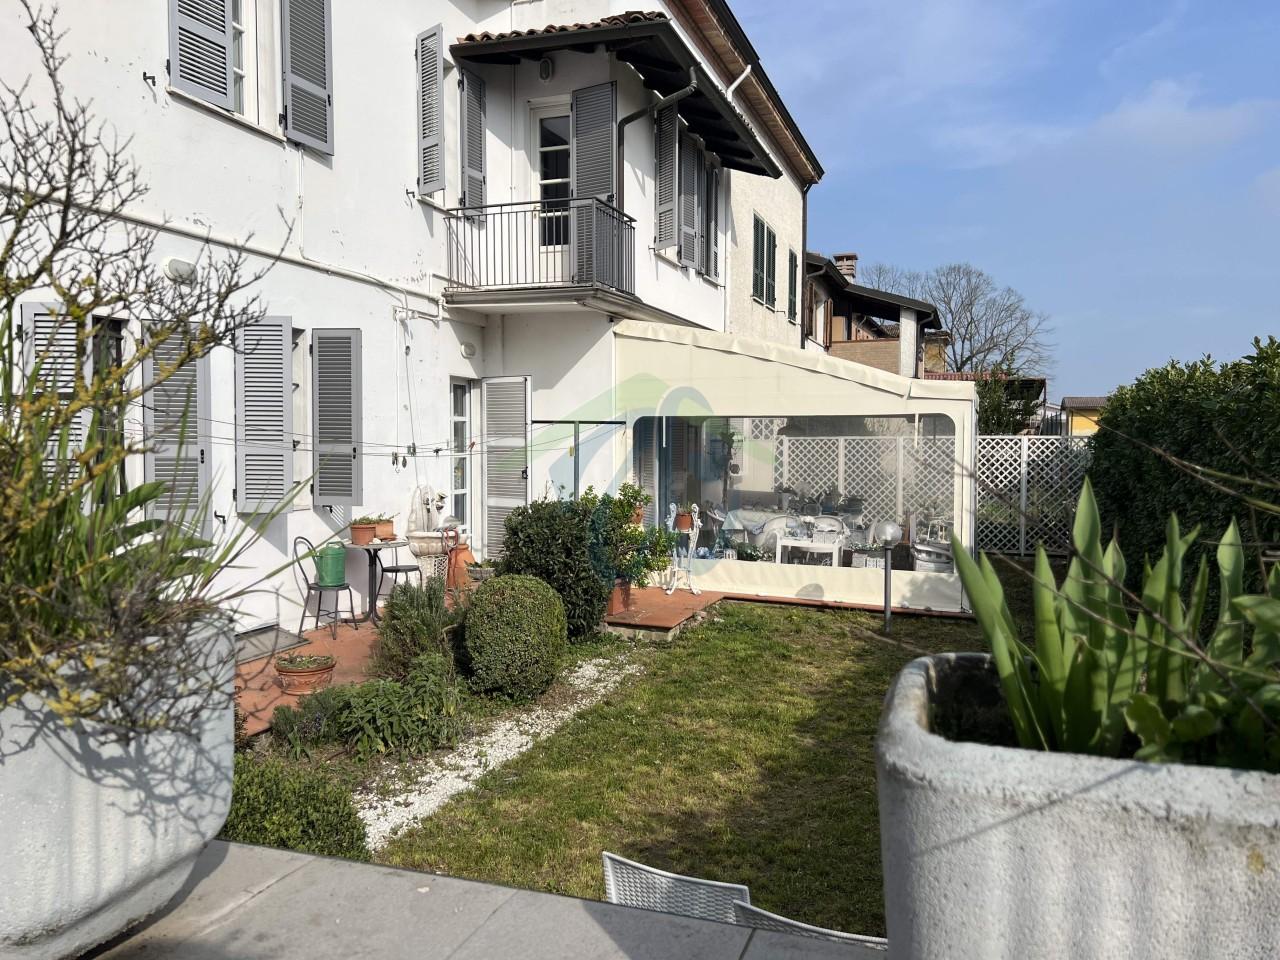 Villa in vendita a Piacenza